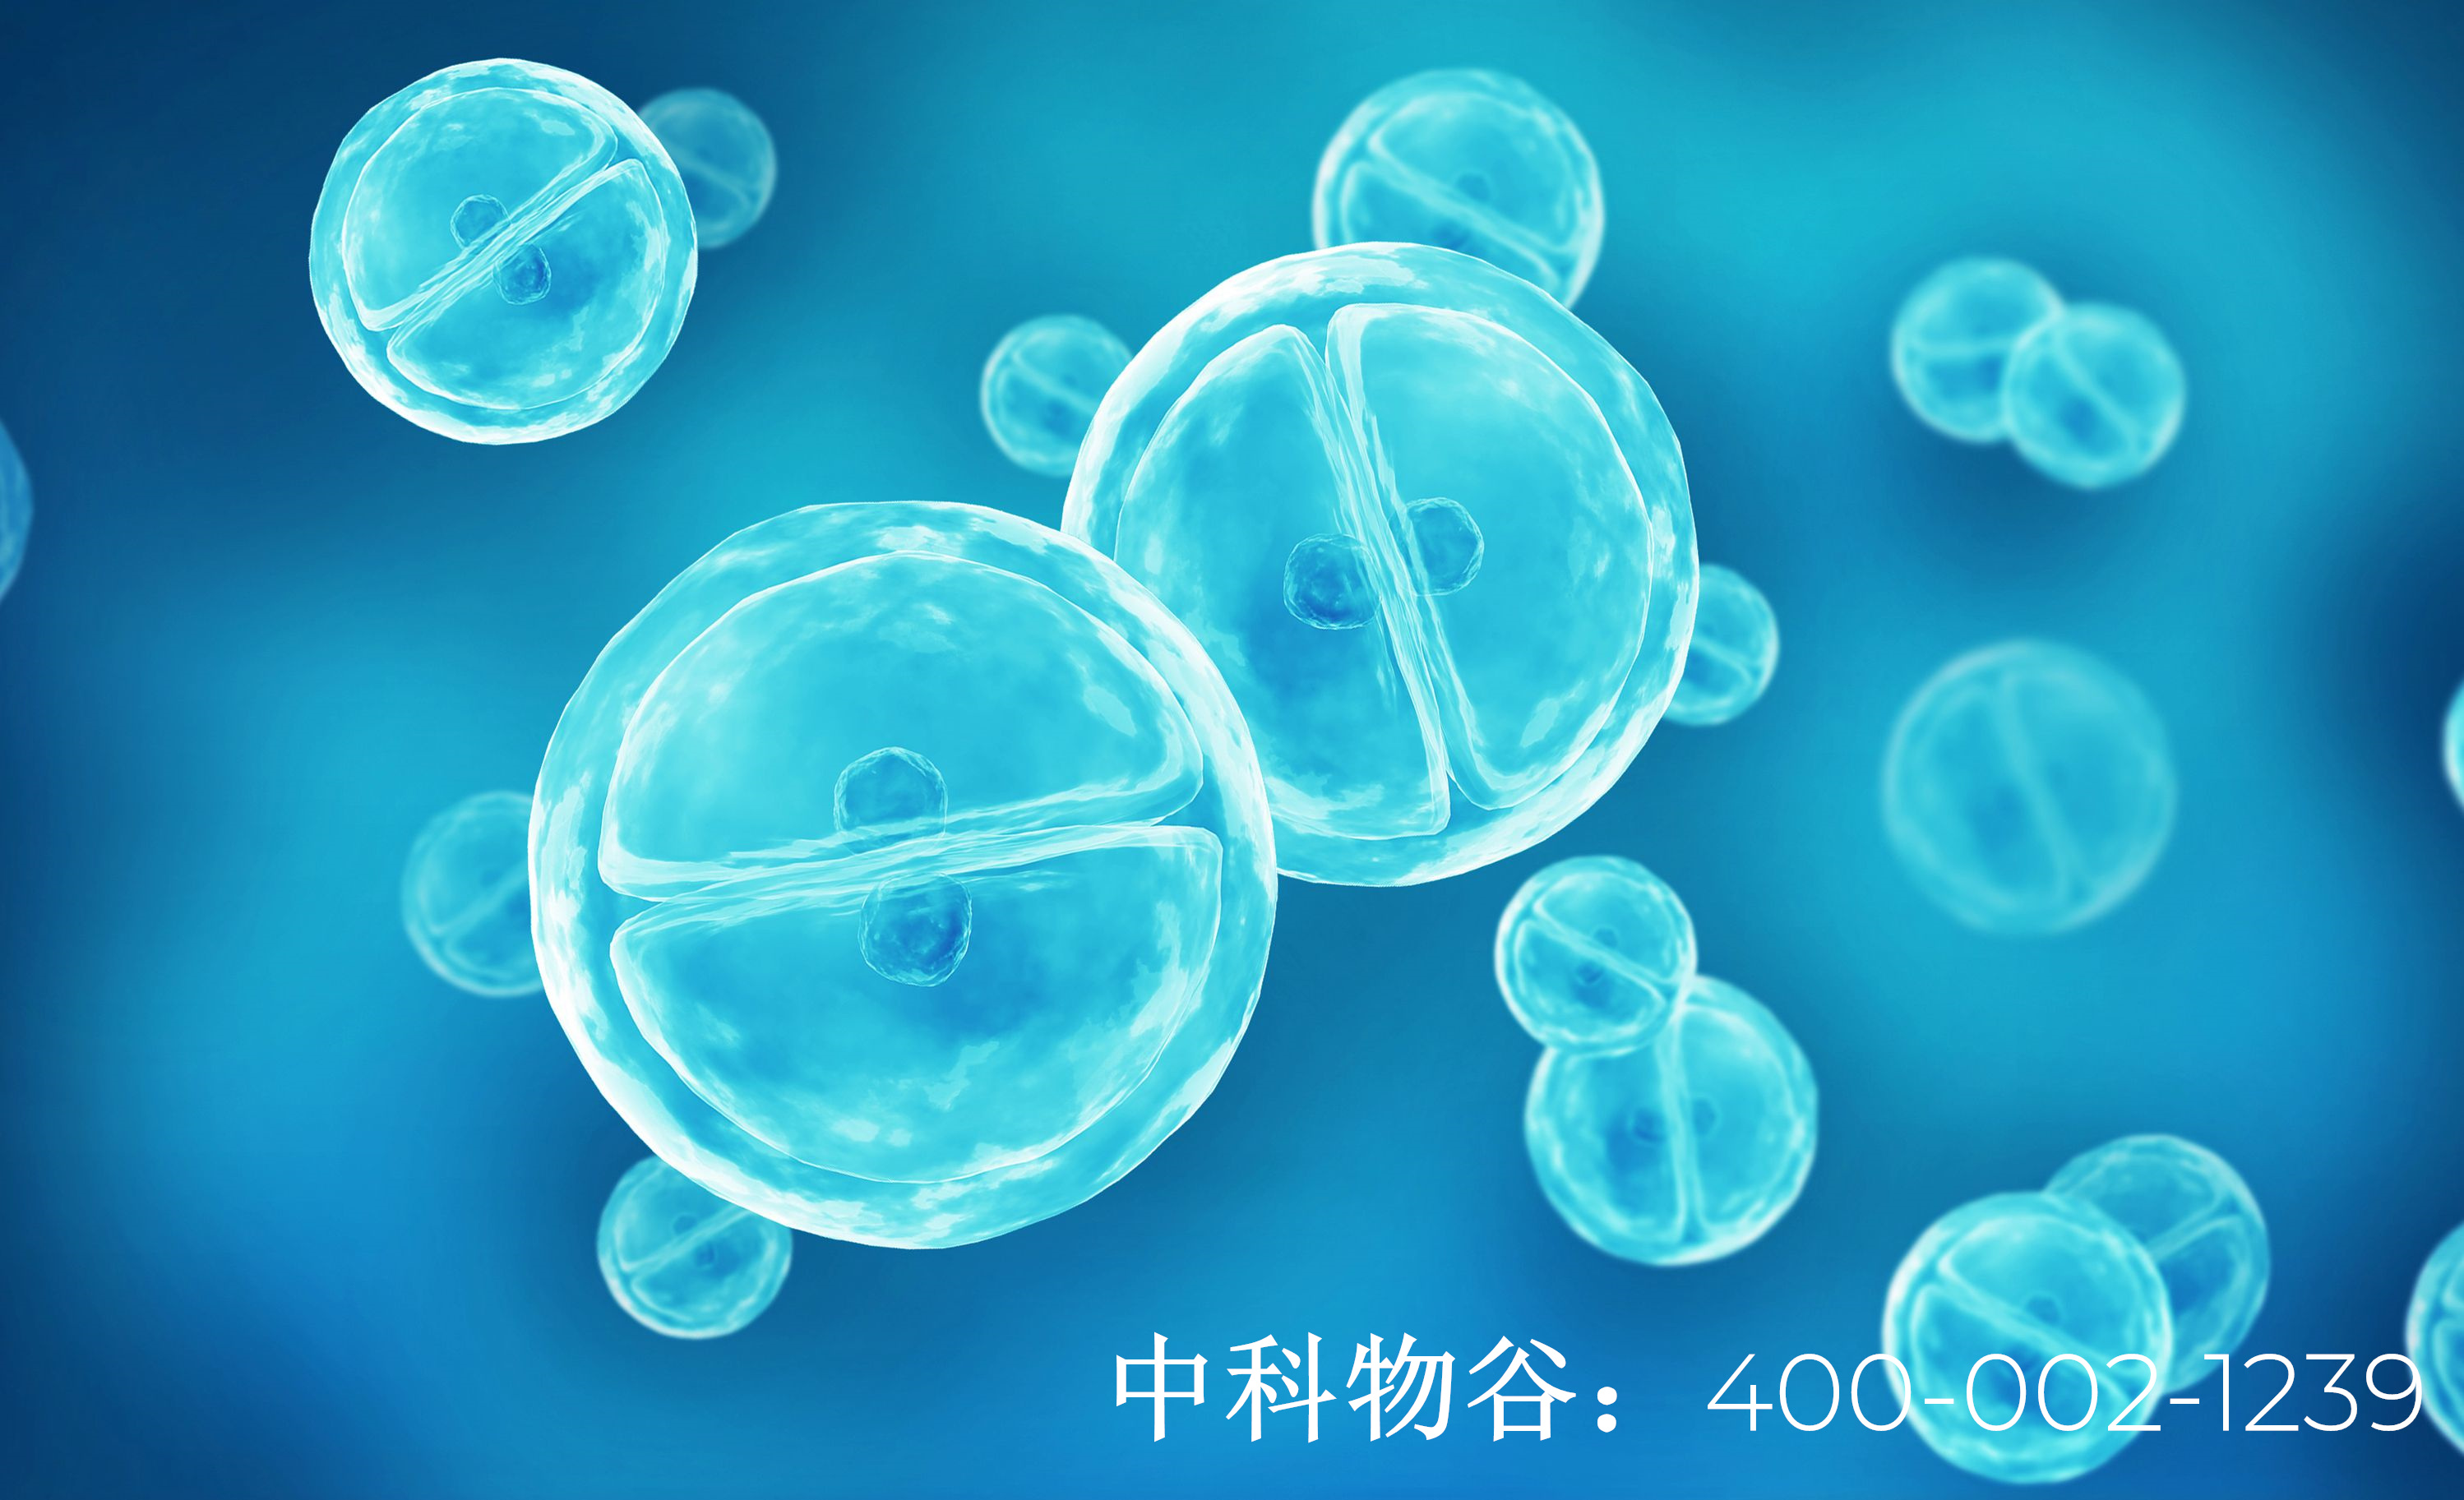 中国有多少家干细胞公司